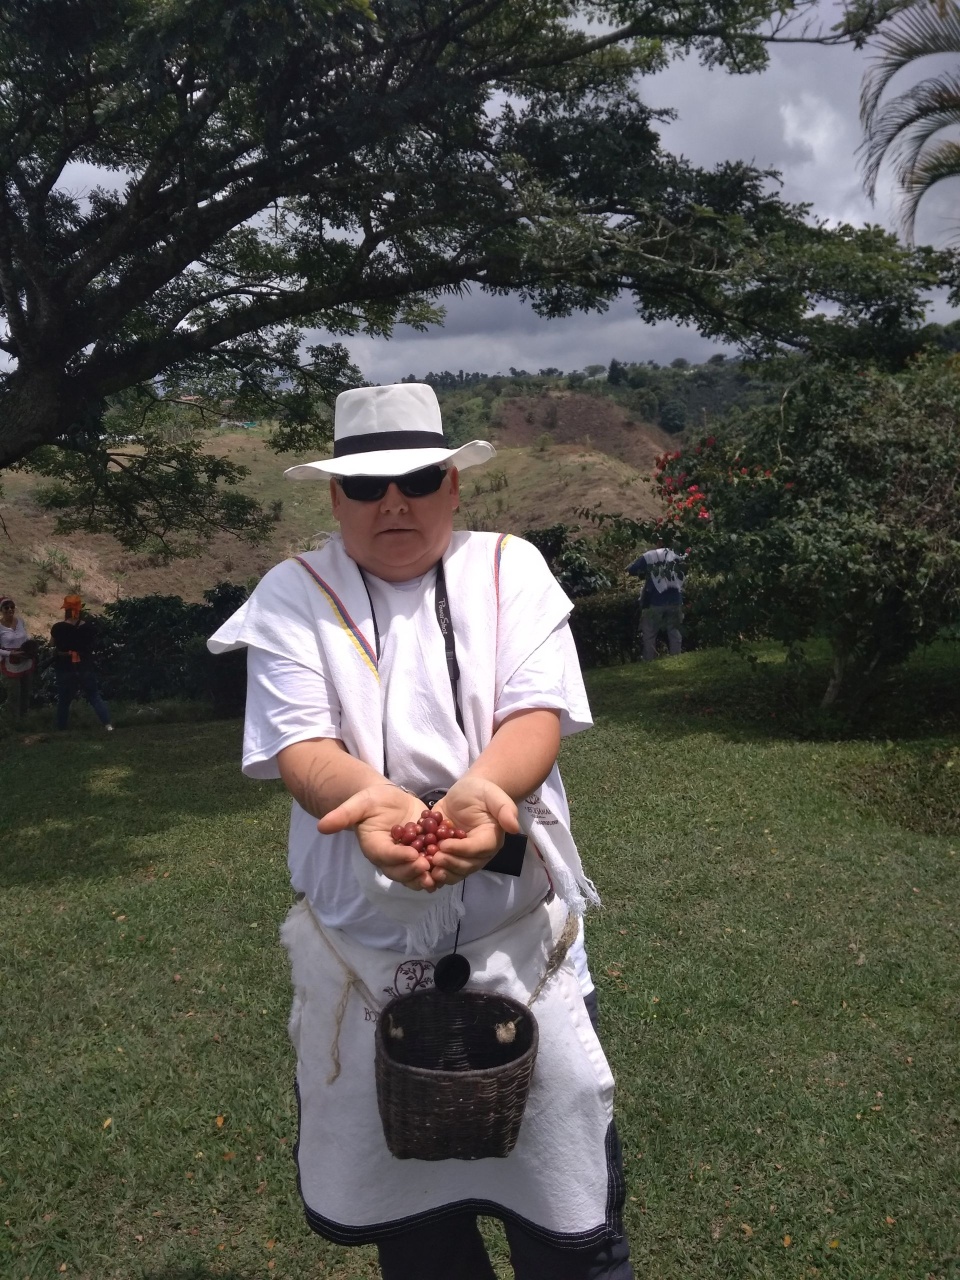 Autor na jednej z plantacji kawowych w tradycyjnym stroju prezentuje efekt zbioru. Fot. ze zbiorów prywatnych autora